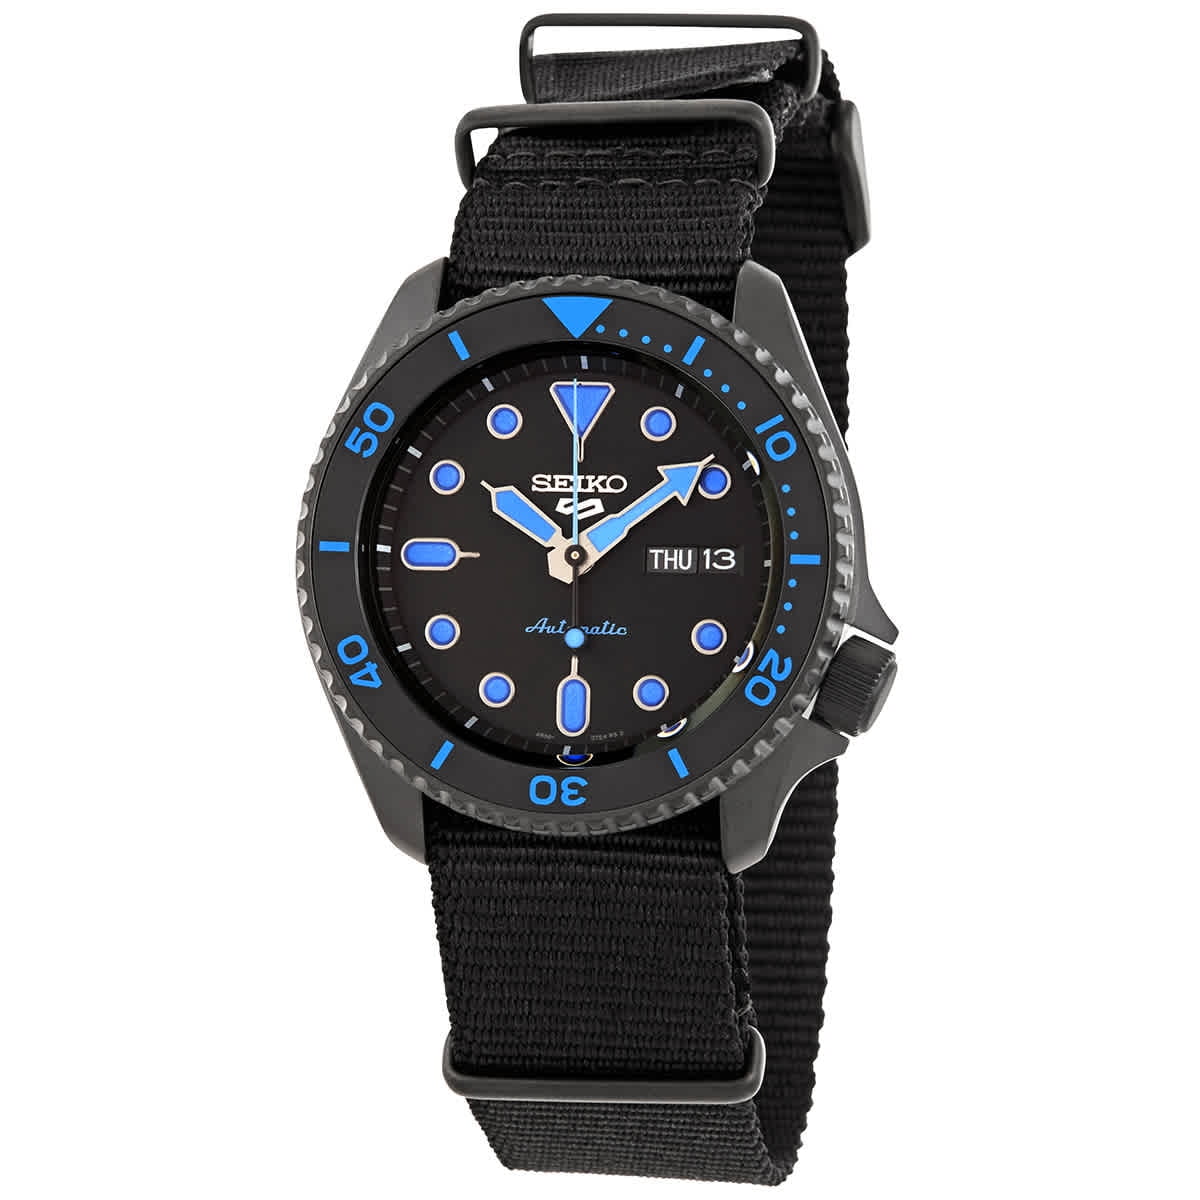 Seiko 5 sports Automatic Black Dial Men's Watch SRPD81K1 